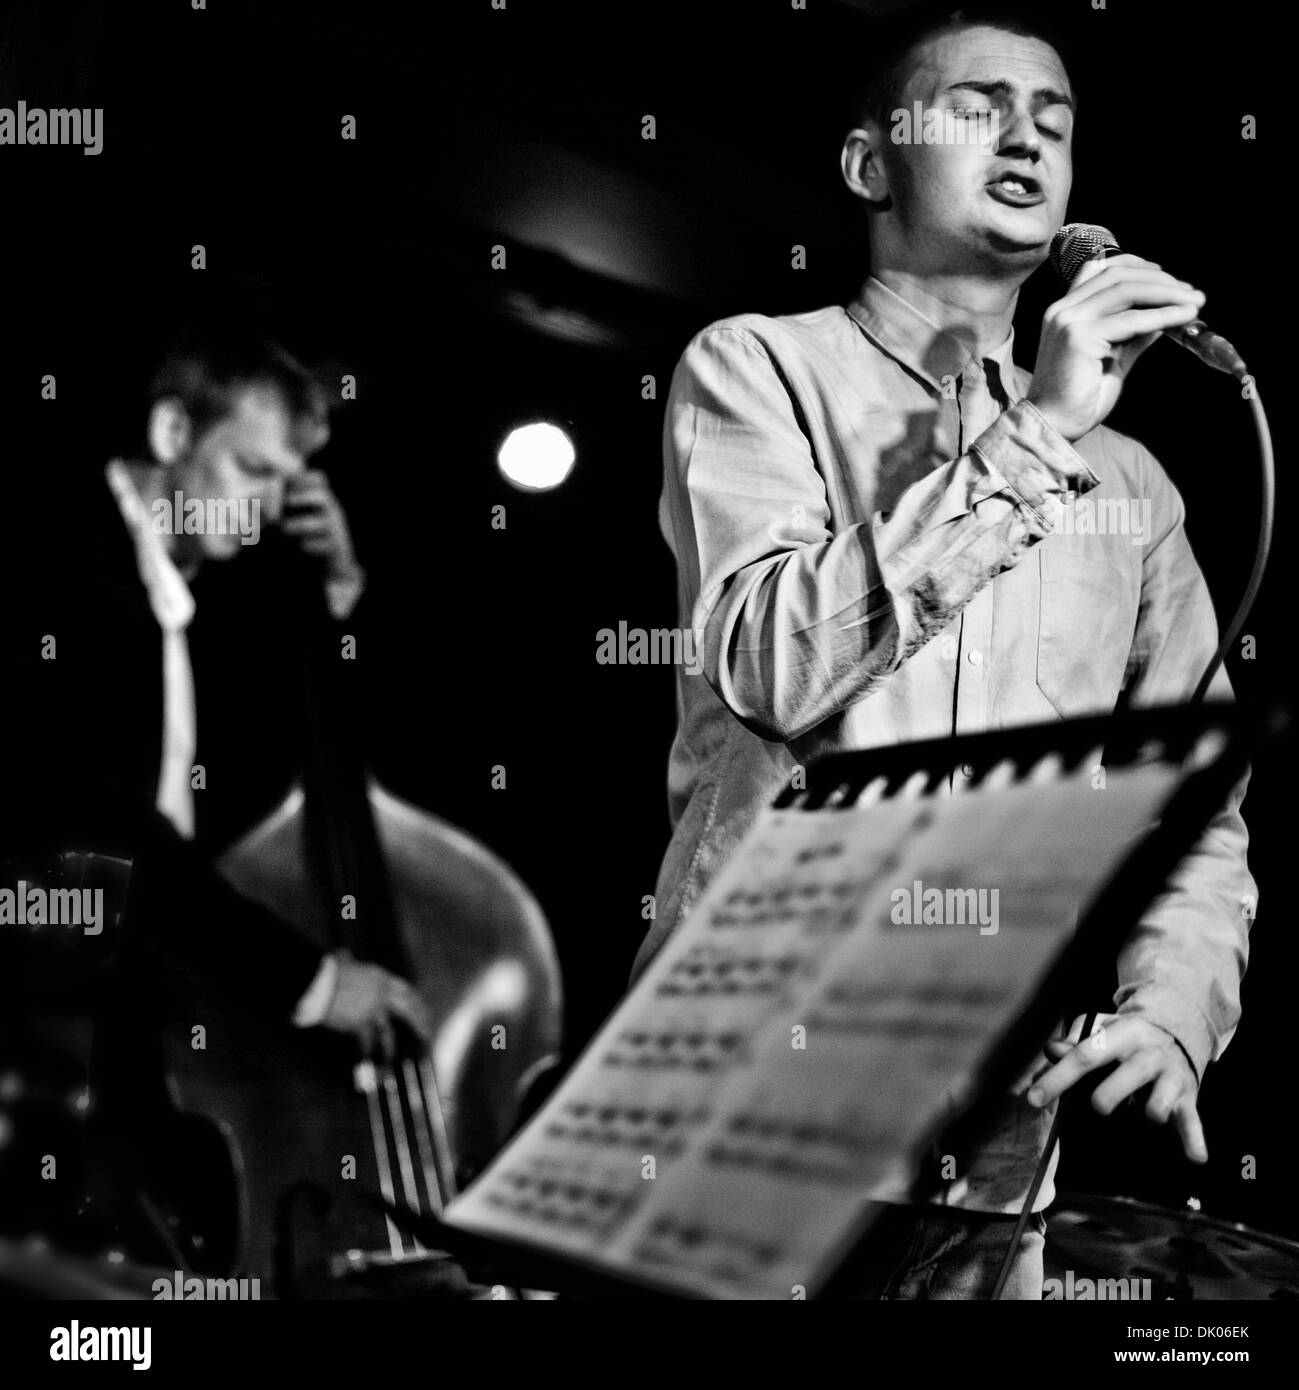 Jazz Singer Josh Kyle performs in London, UK Stock Photo